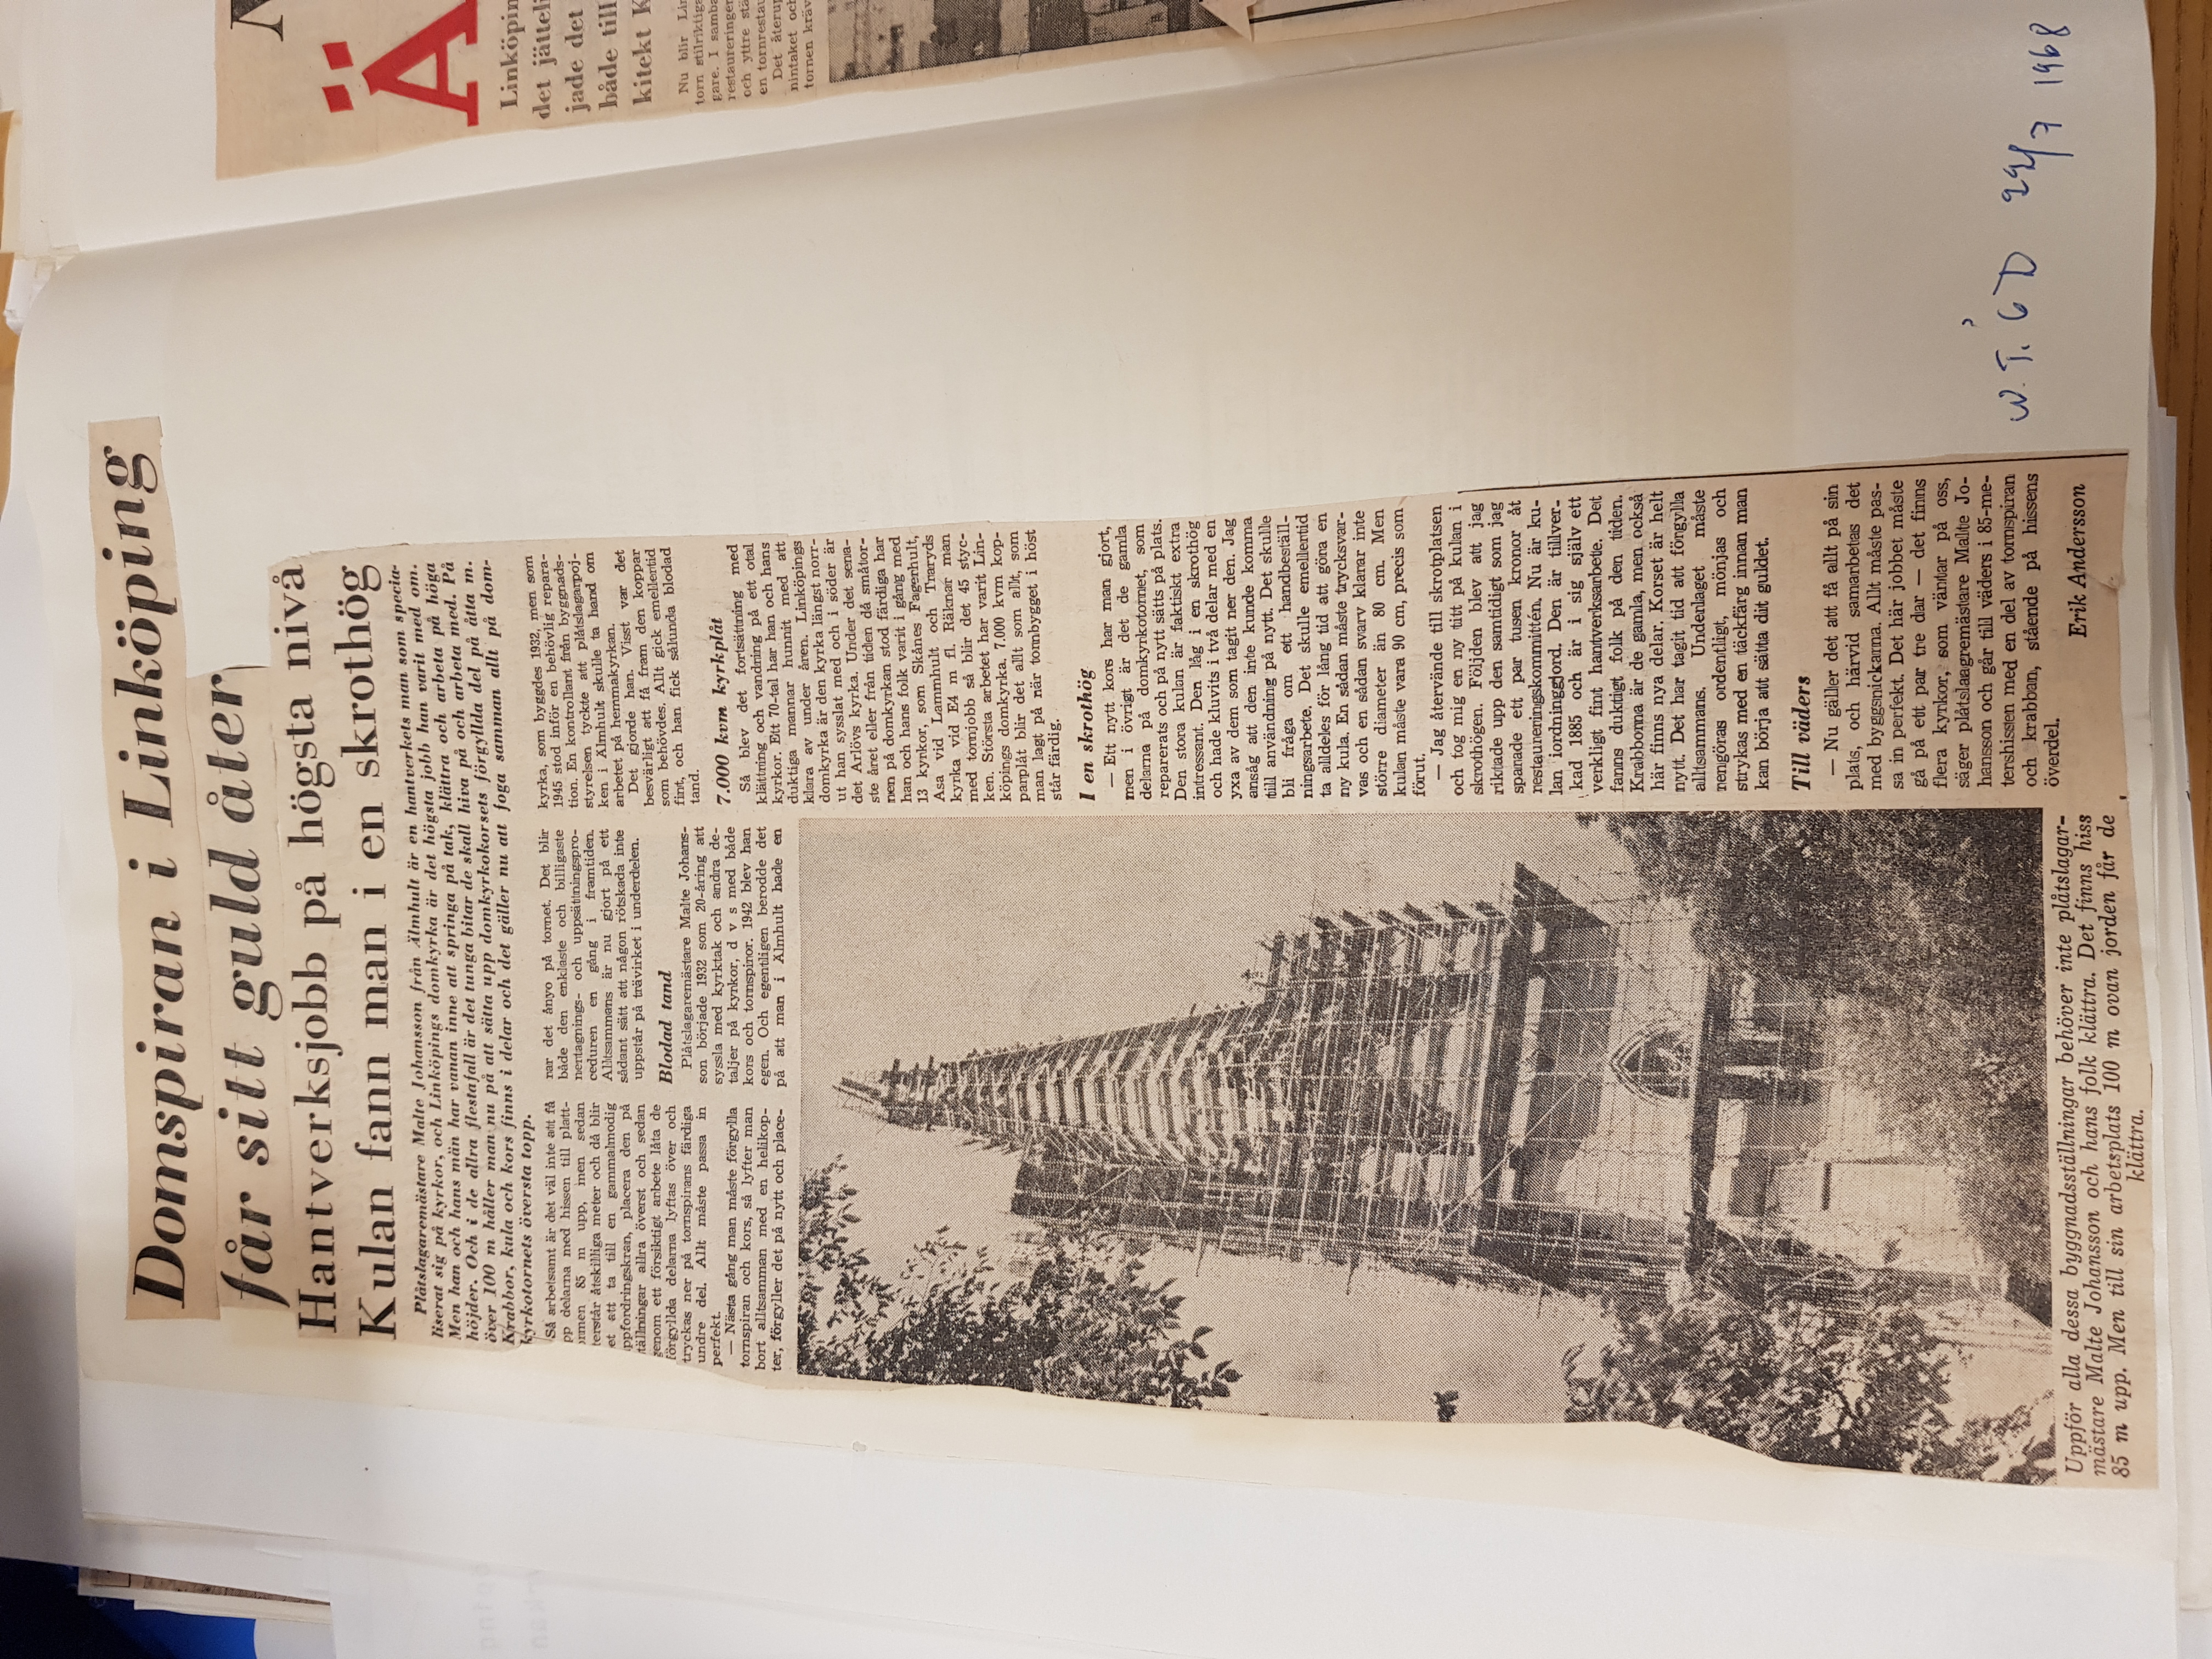 Artikel om restaureringsarbetet på Linköpings domkyrka i Norrköpings tidningar/Östergötlands dagblad i juli 1968. 